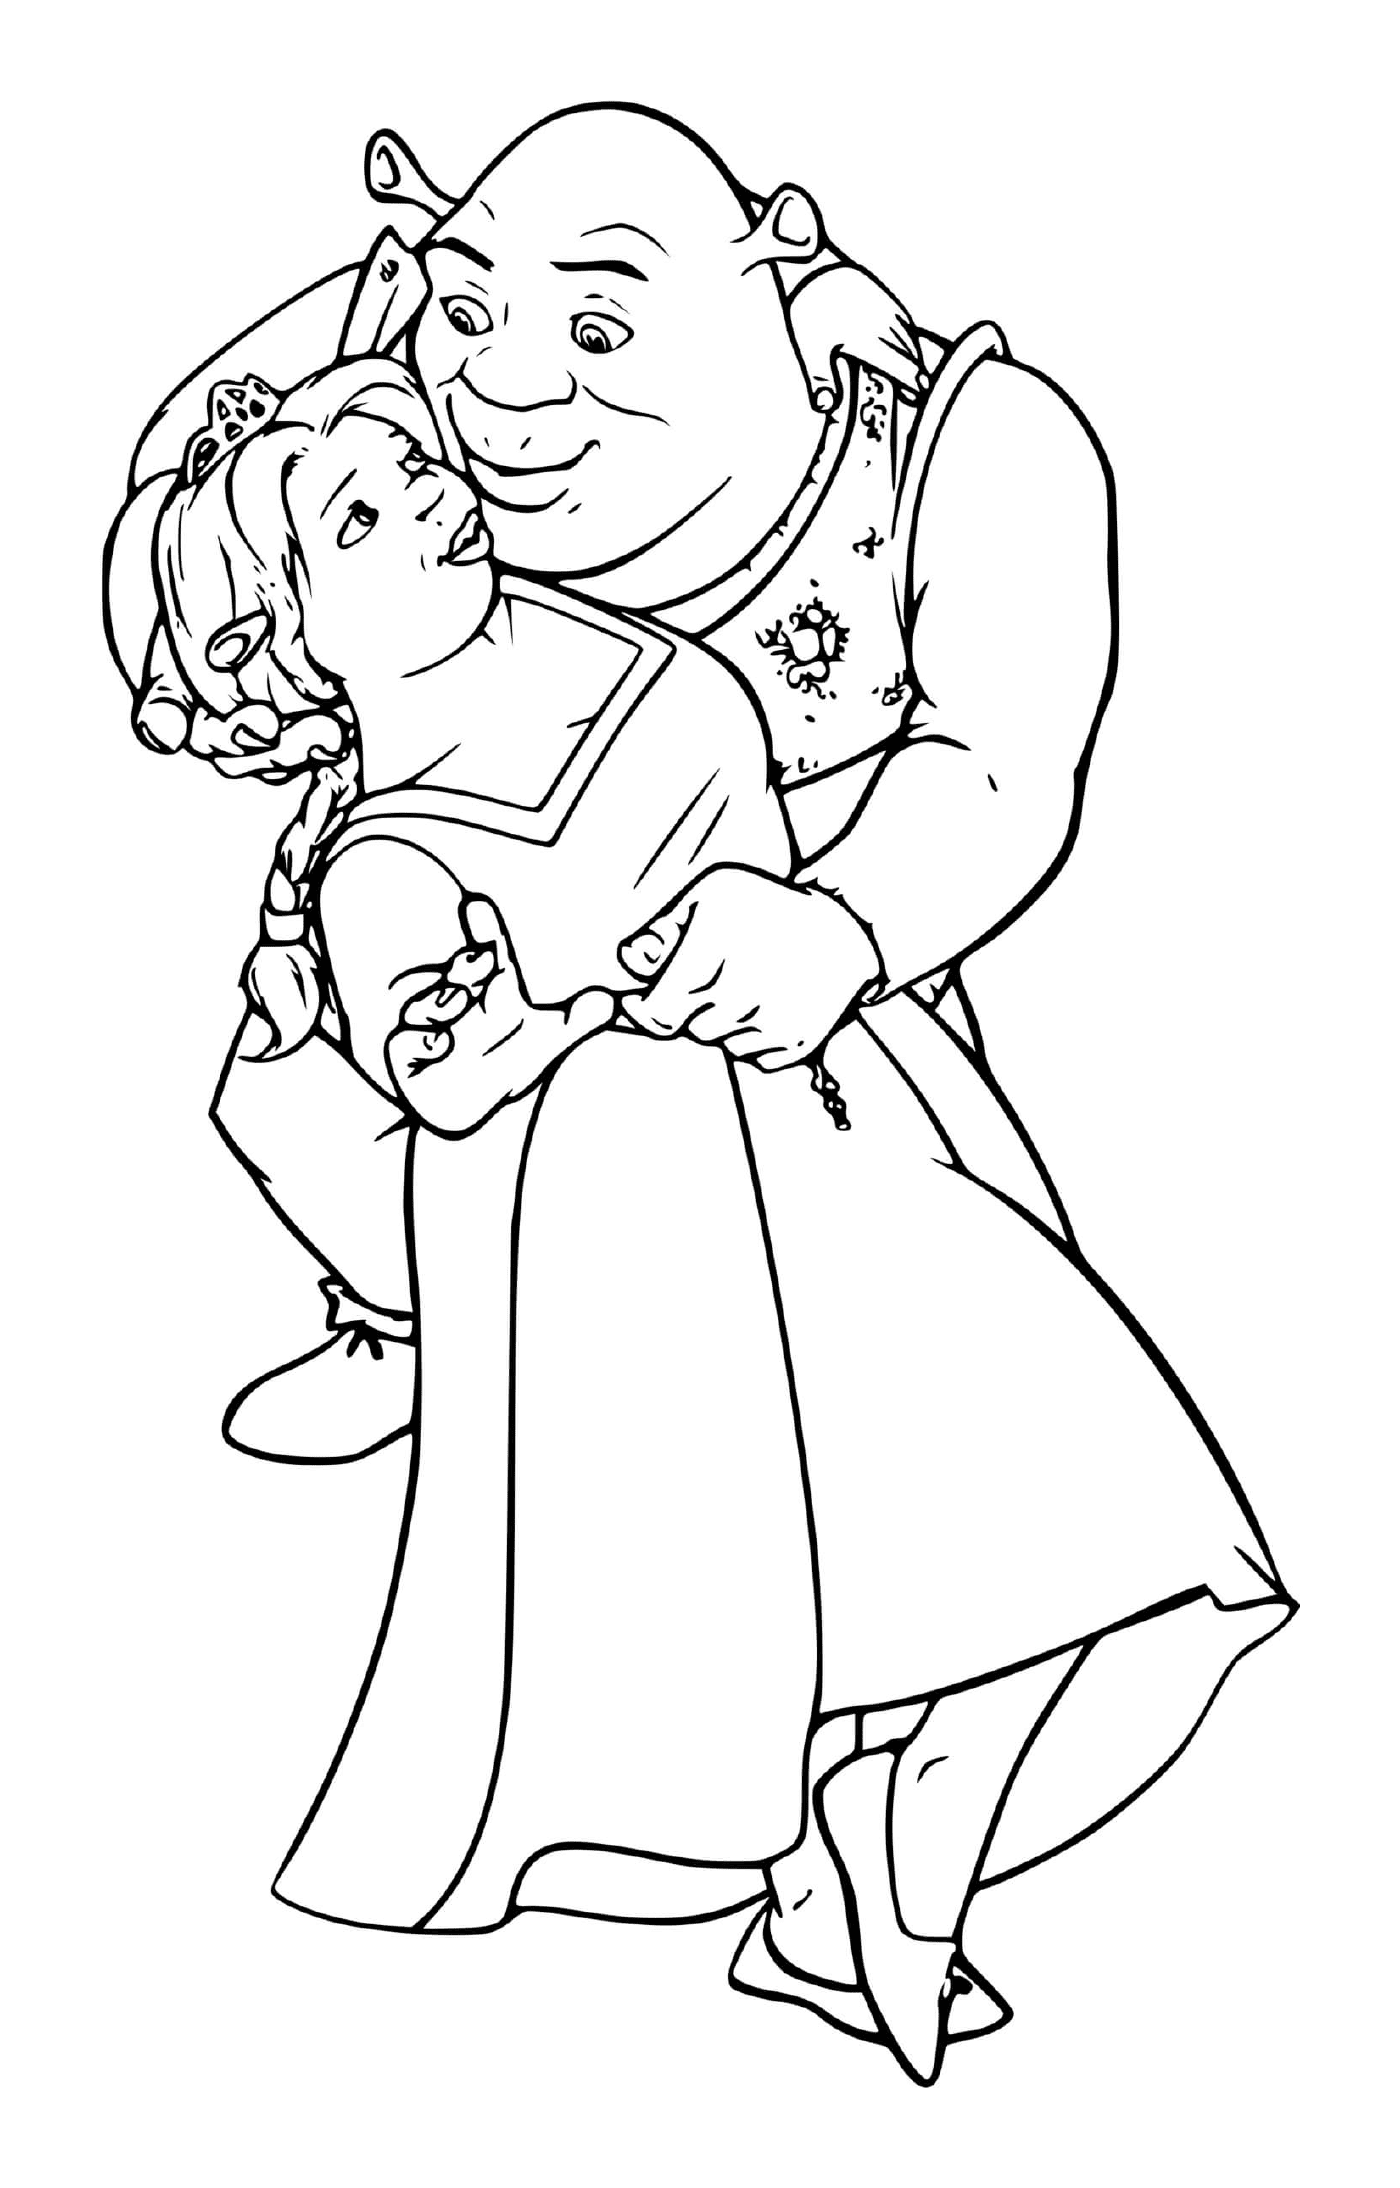  一个老男人怀着一个小女孩在怀里 